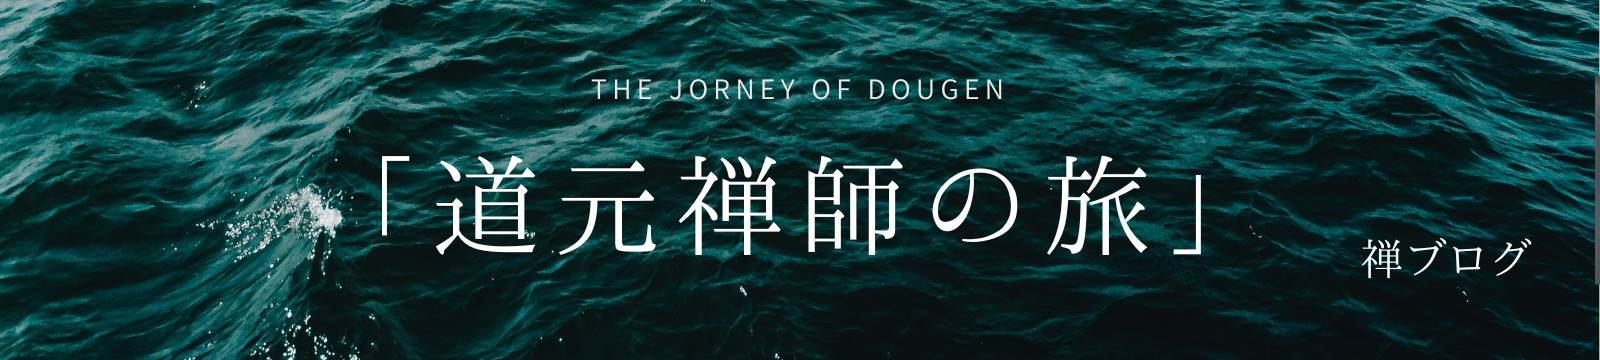 「道元禅師の旅」THE JOURNEY OF DOUGEN/禅ブログ